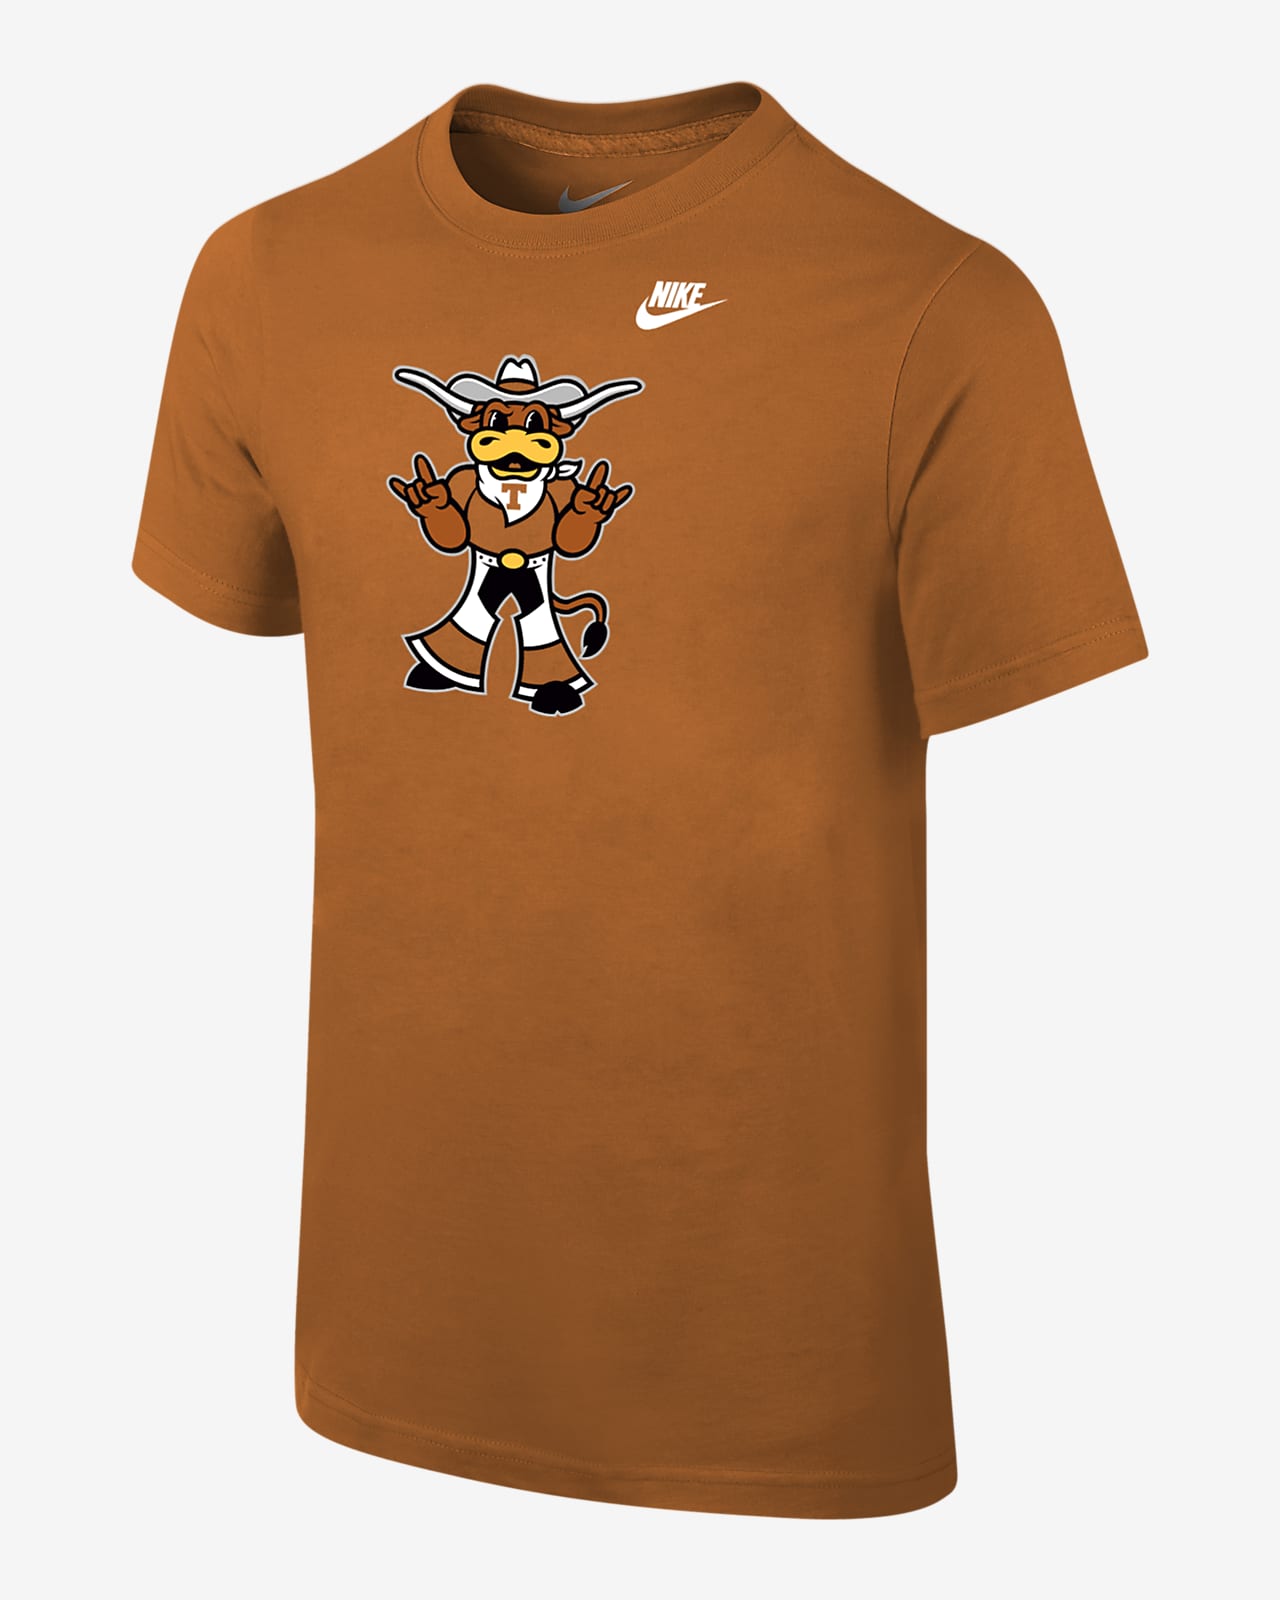 Texas Big Kids' (Boys') Nike College T-Shirt